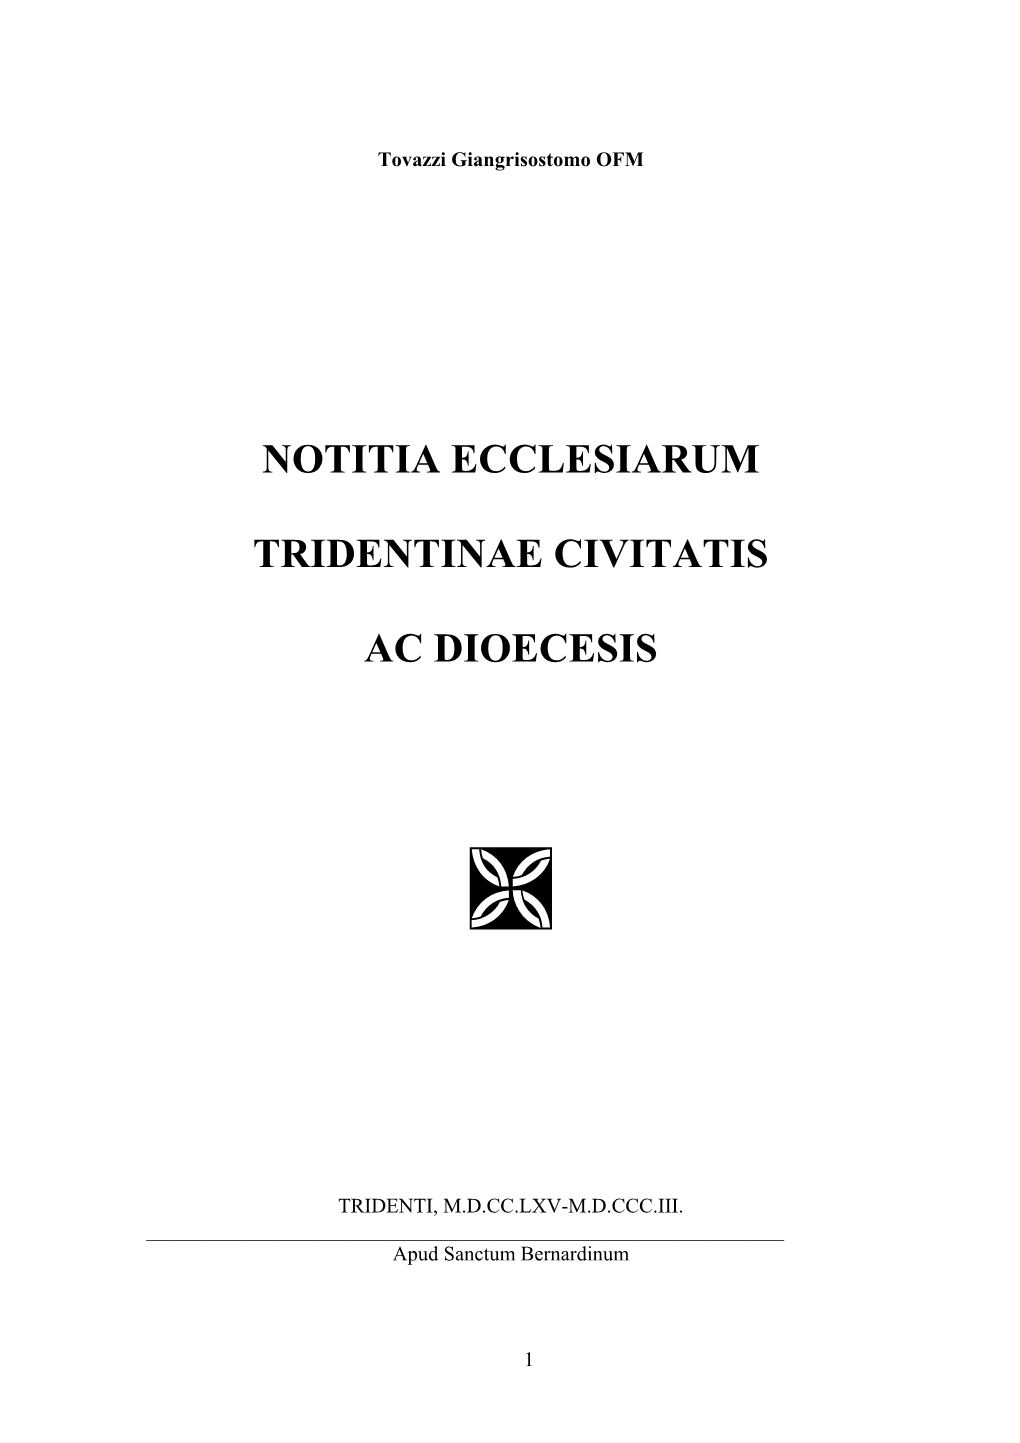 Notitia Ecclesiarum Tridentinae Civitatis Ac Dioecesis